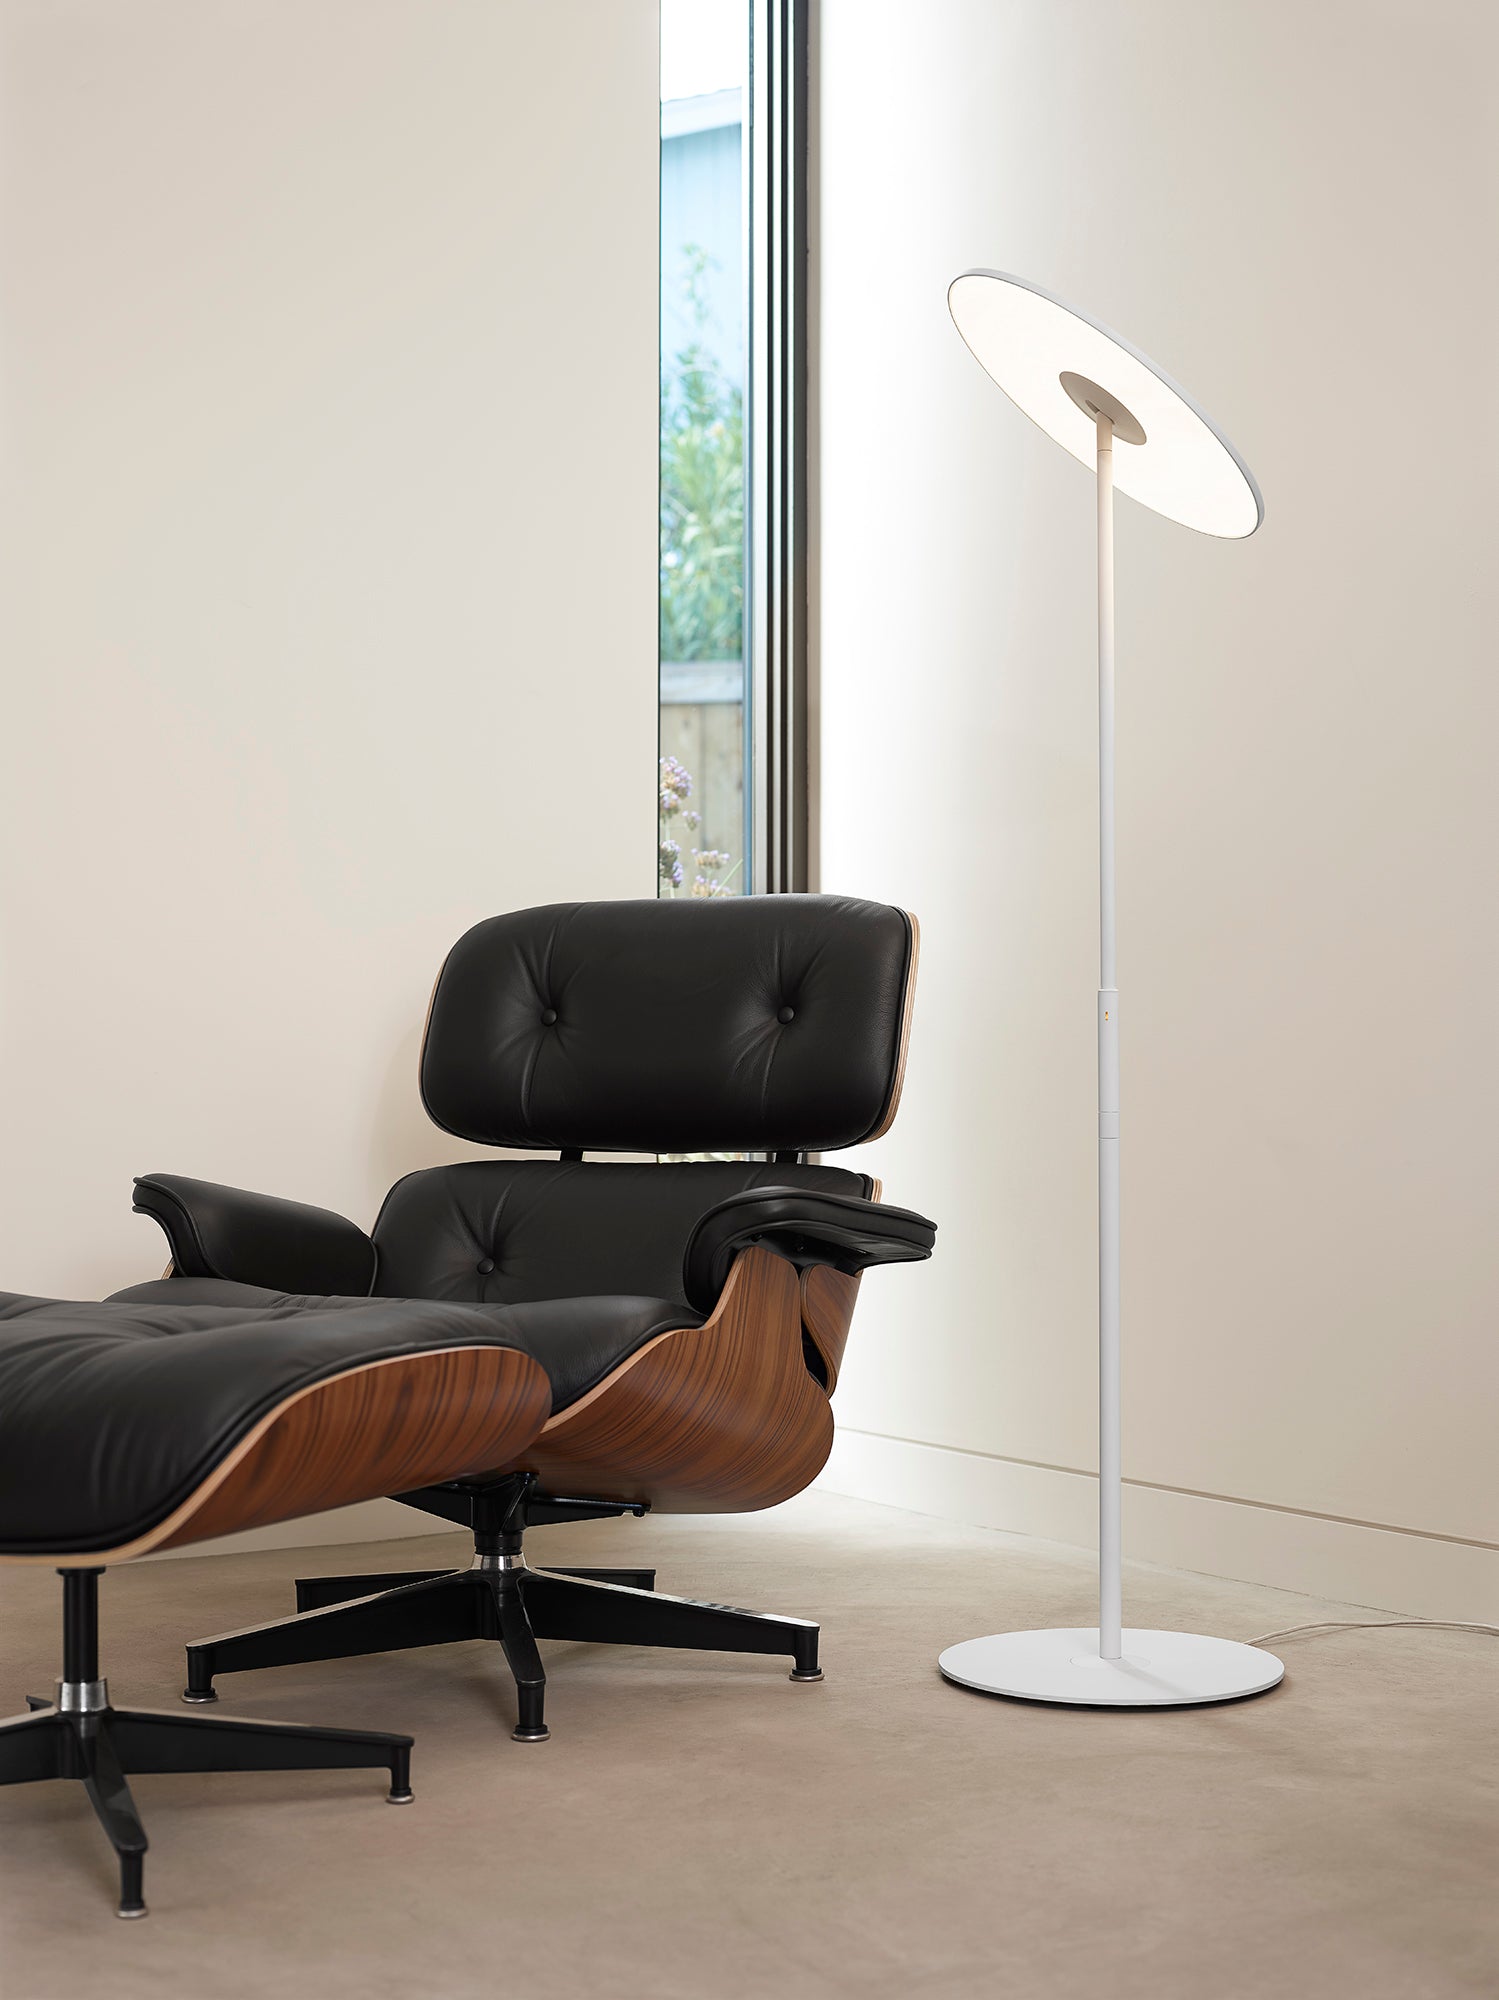 Pablo Designs Circa Floor Lamp | Living Room Lamp